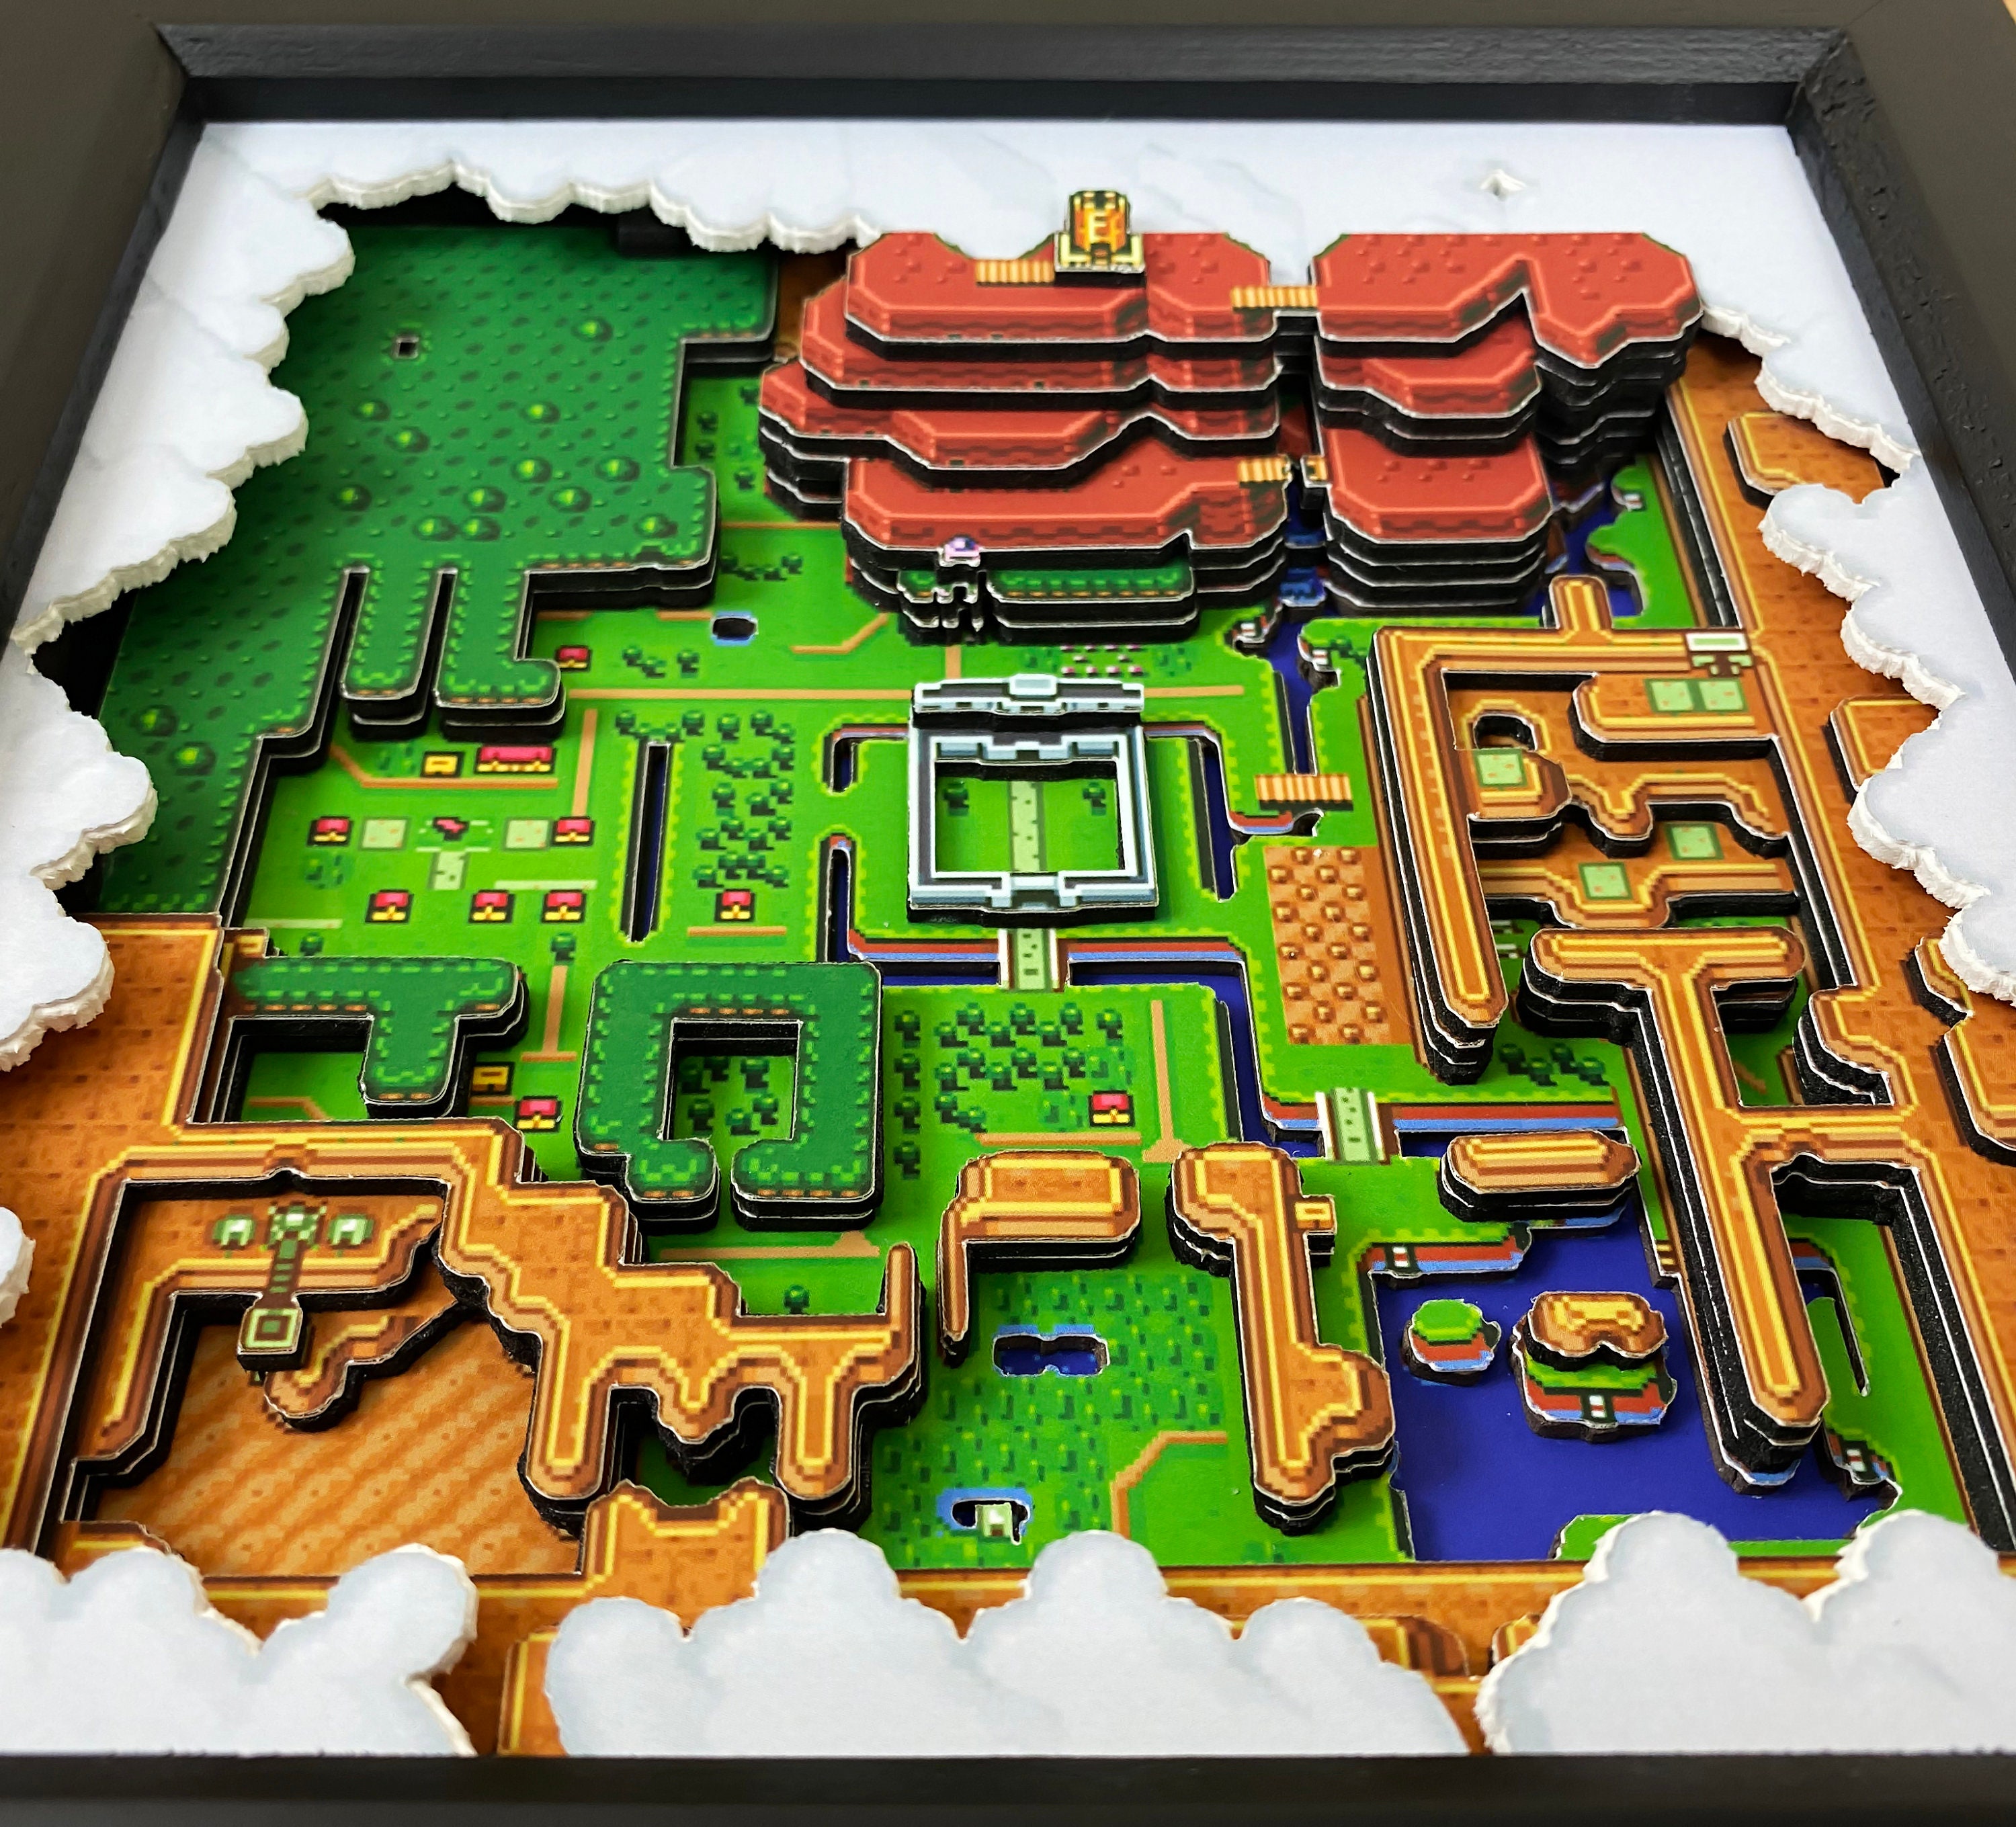 The Legend of Zelda Shadowbox Nintendo Start Screen Zelda Gifts 